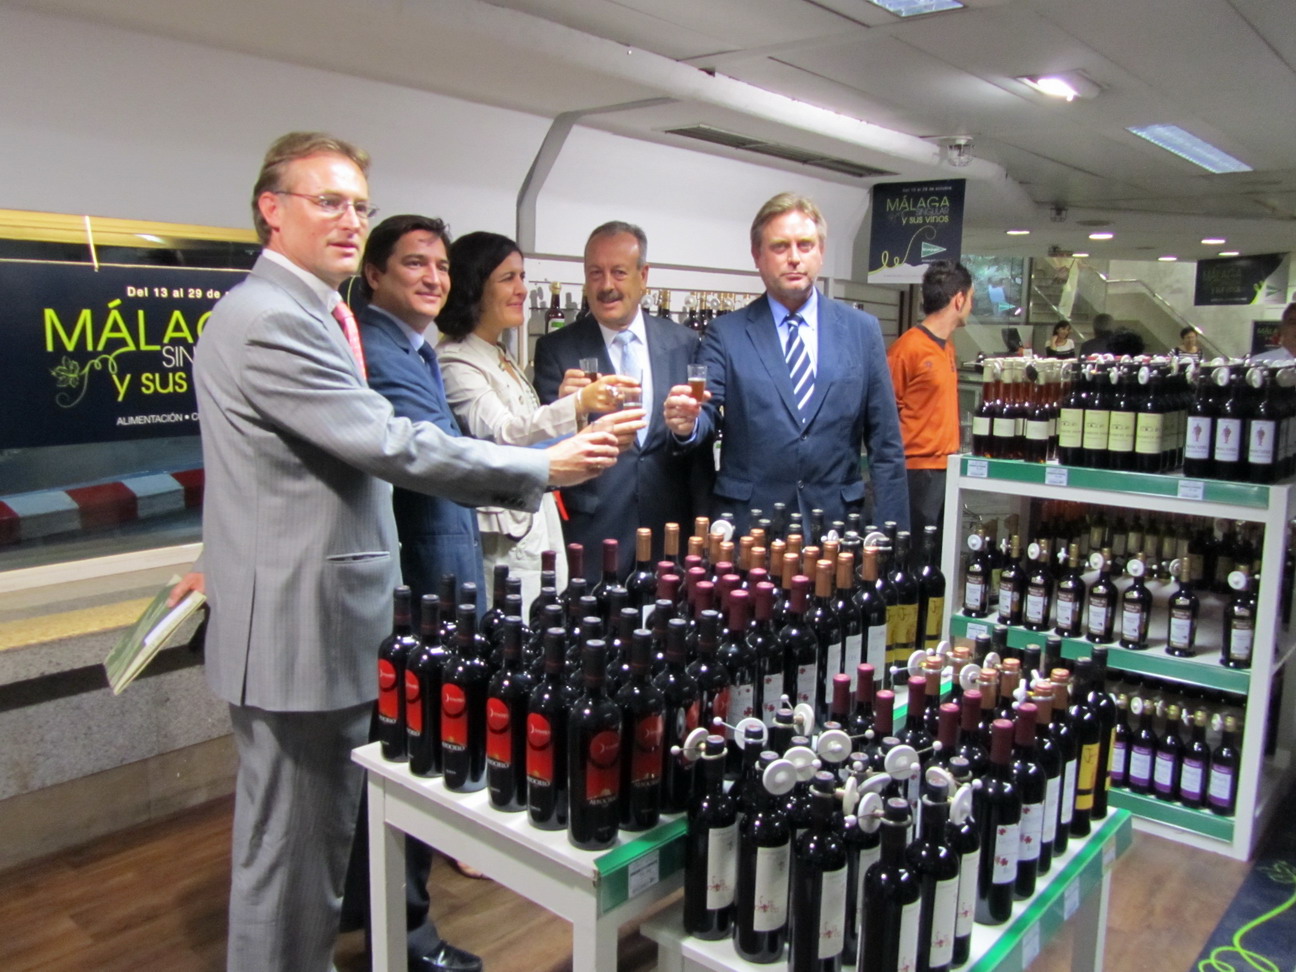 Arranca Mlaga Singular 2011 y sus Vinos con la participacin de once empresas del Guadalhorce